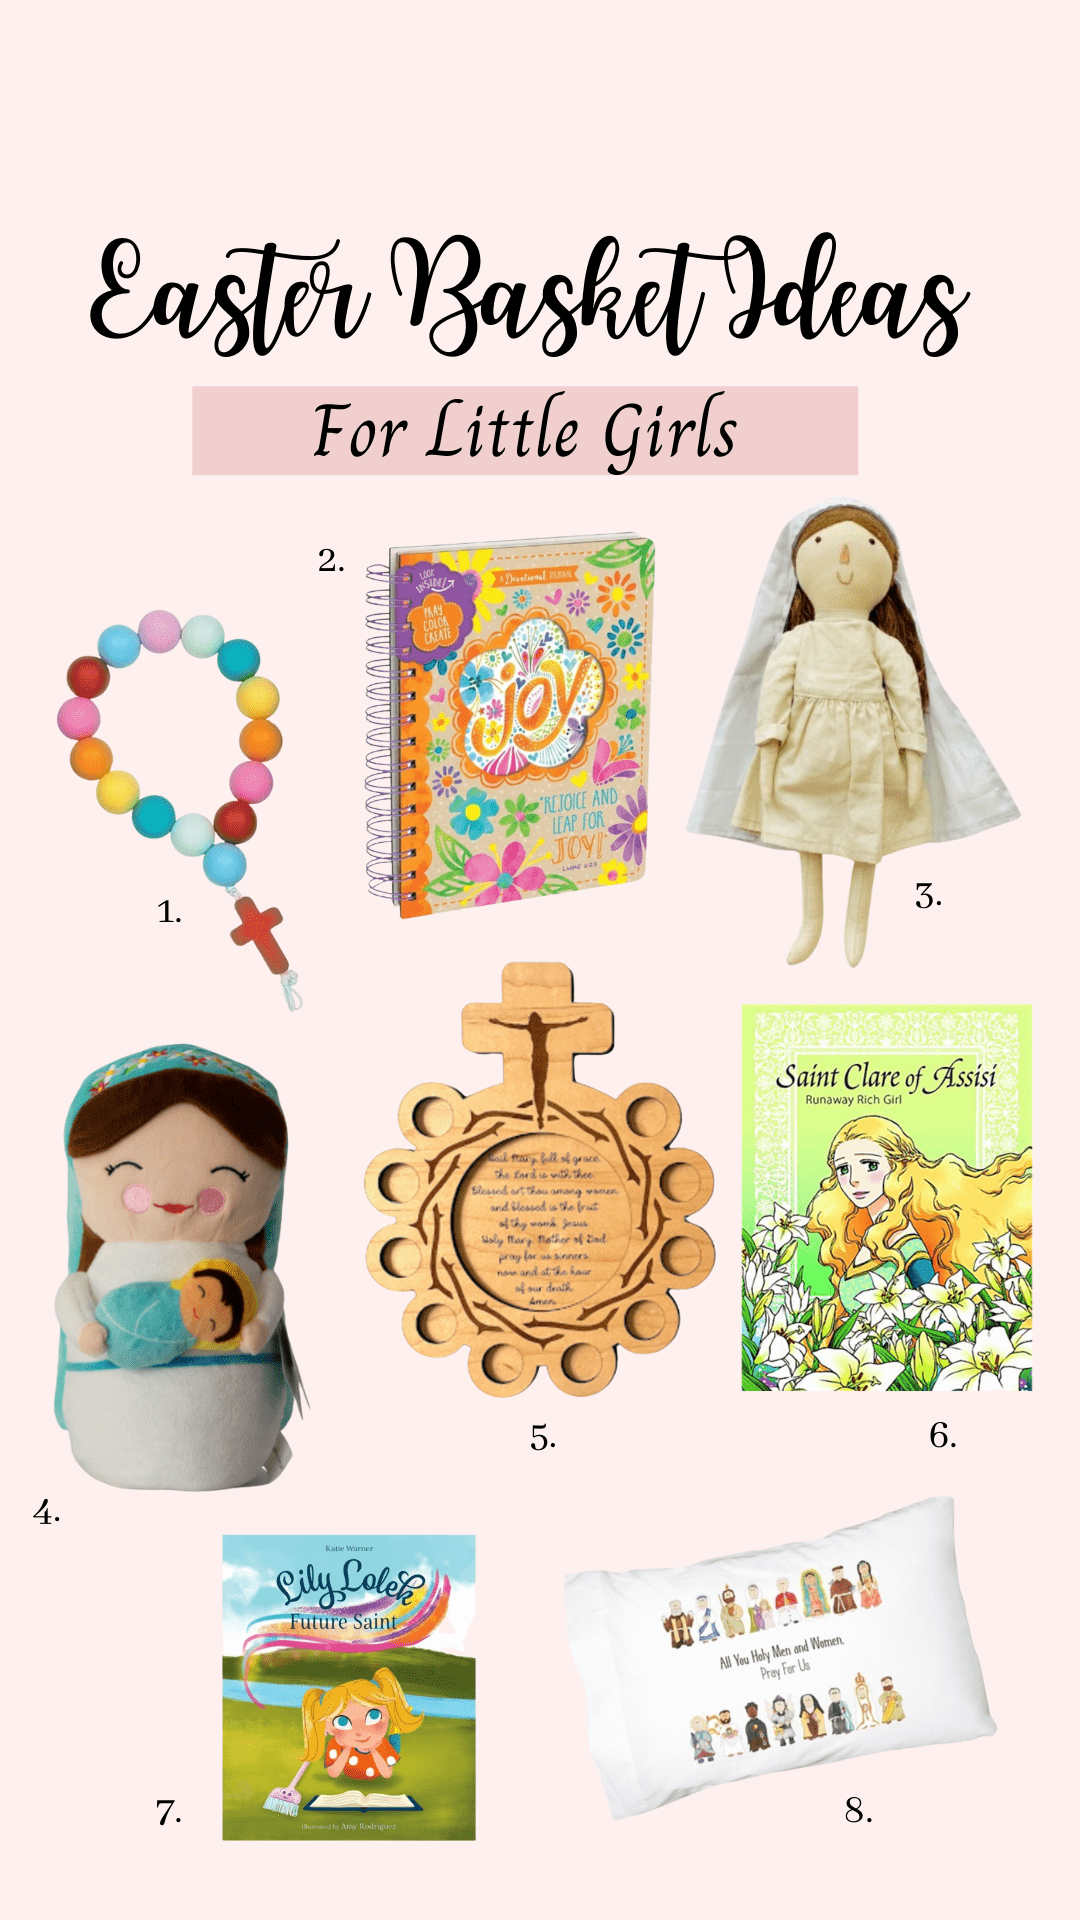 Catholic Gifts for Girls